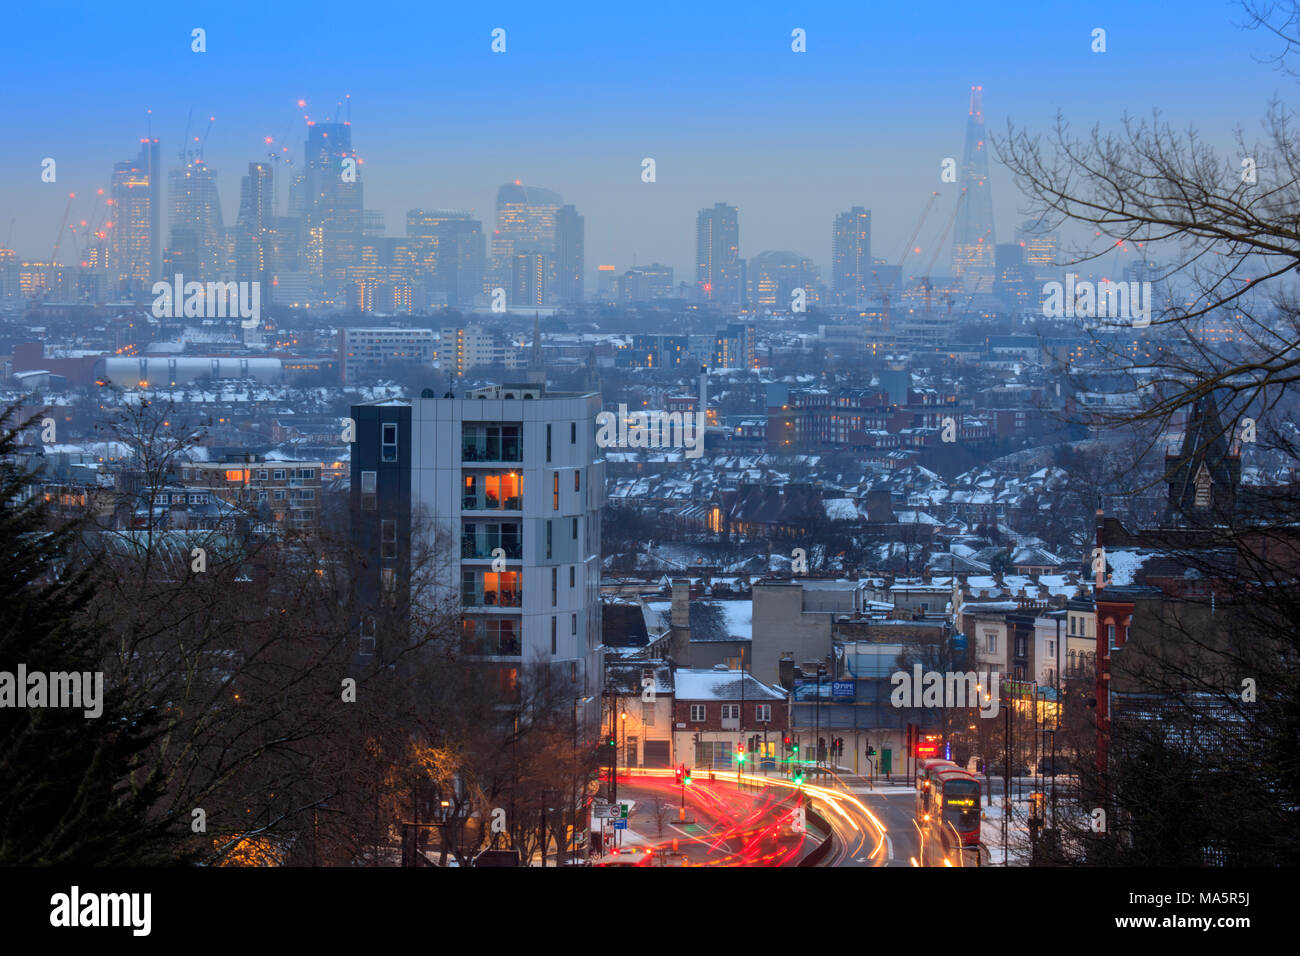 Skyline del centro finanziario di Londra, traffico in movimento sull'autostrada trafficata, vista invernale con neve, senza persone, Archway, Londra del nord, Londra, Regno Unito Foto Stock